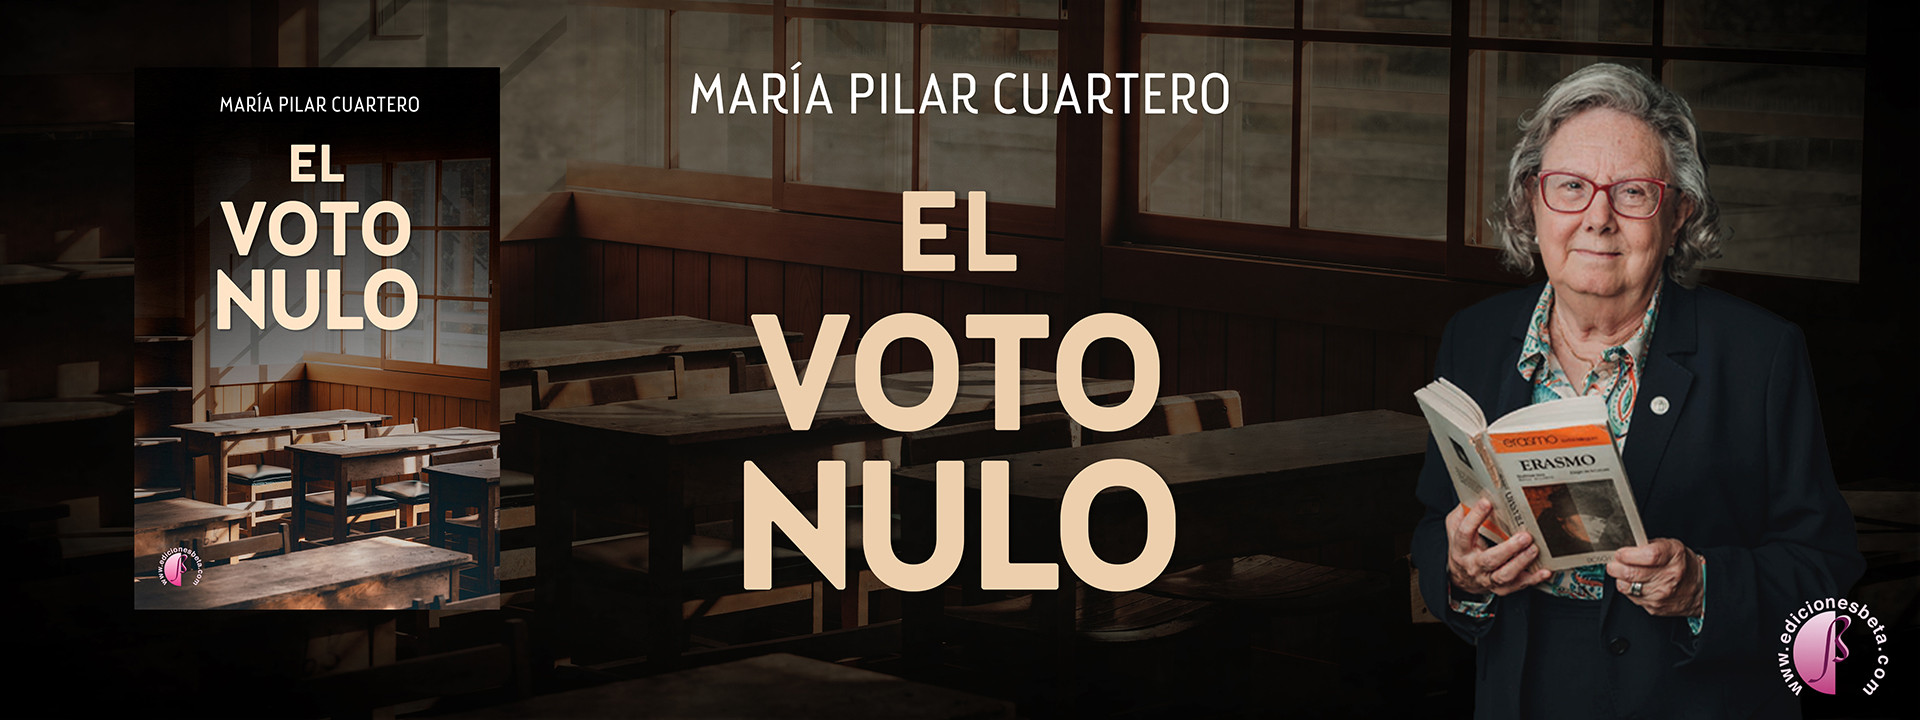 El voto nulo - María Pilar Cuartero